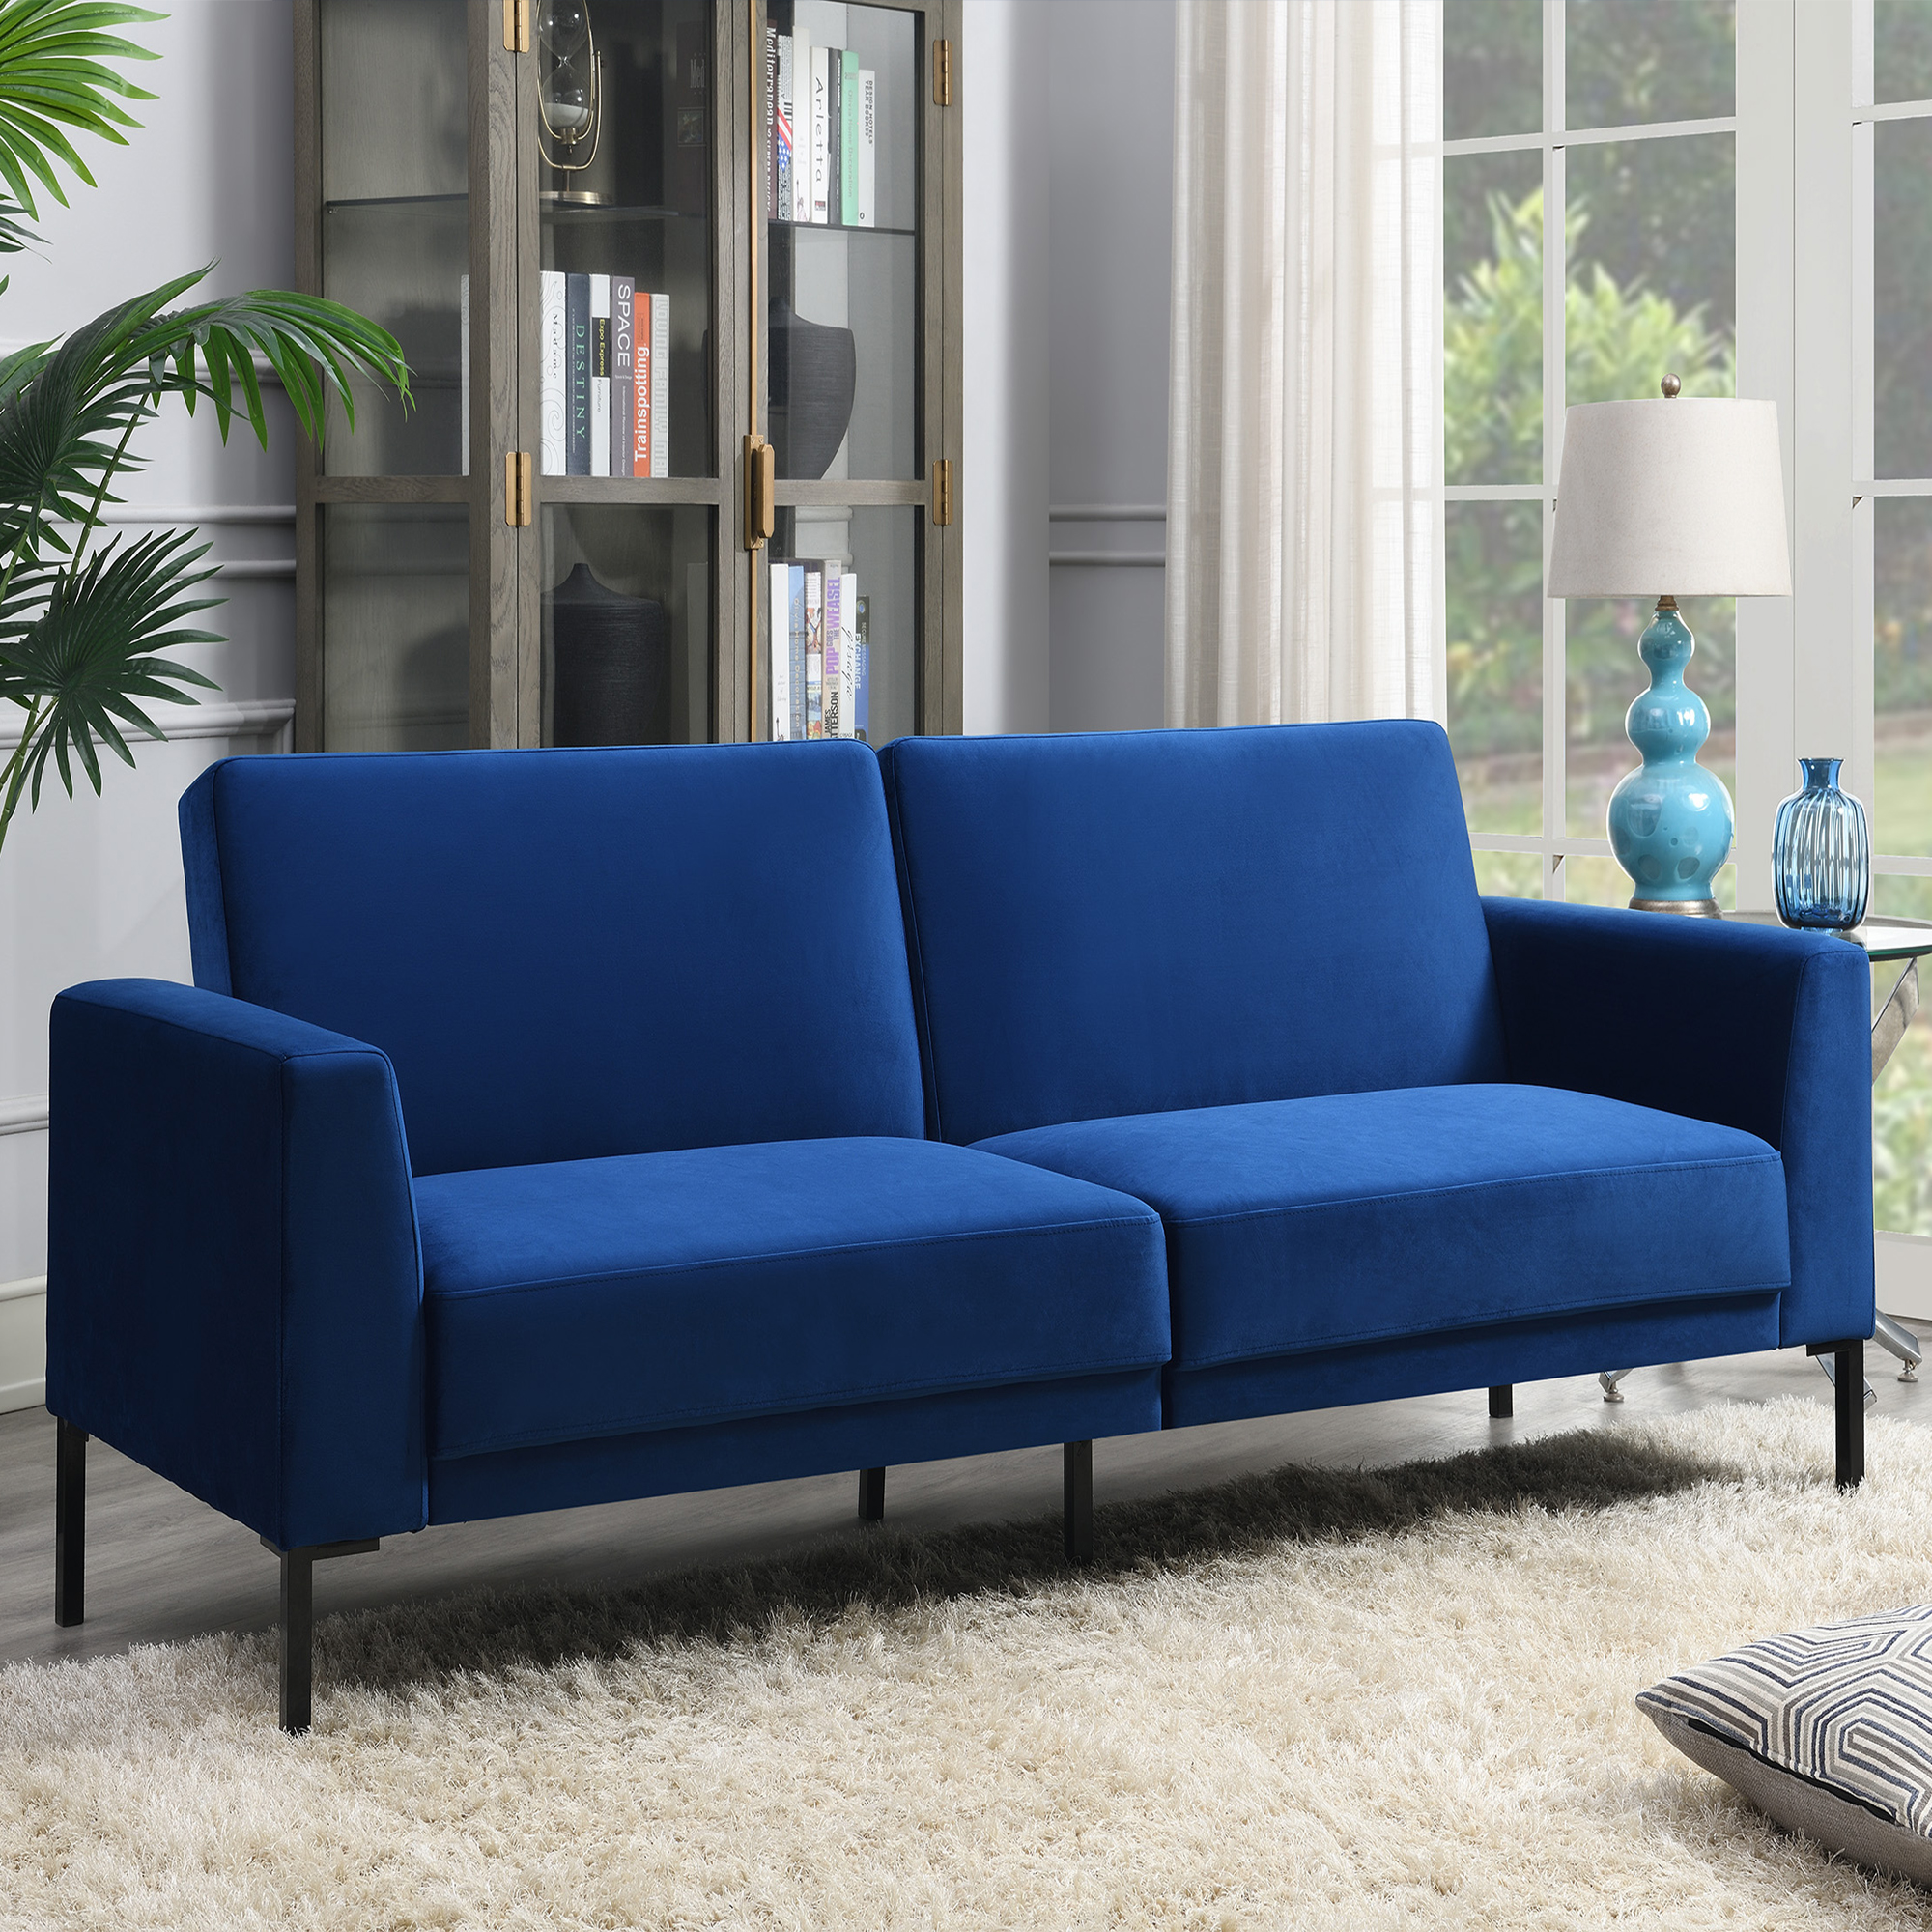 Velvet Upholstered Modern Convertible Folding Futon Sofa Bed